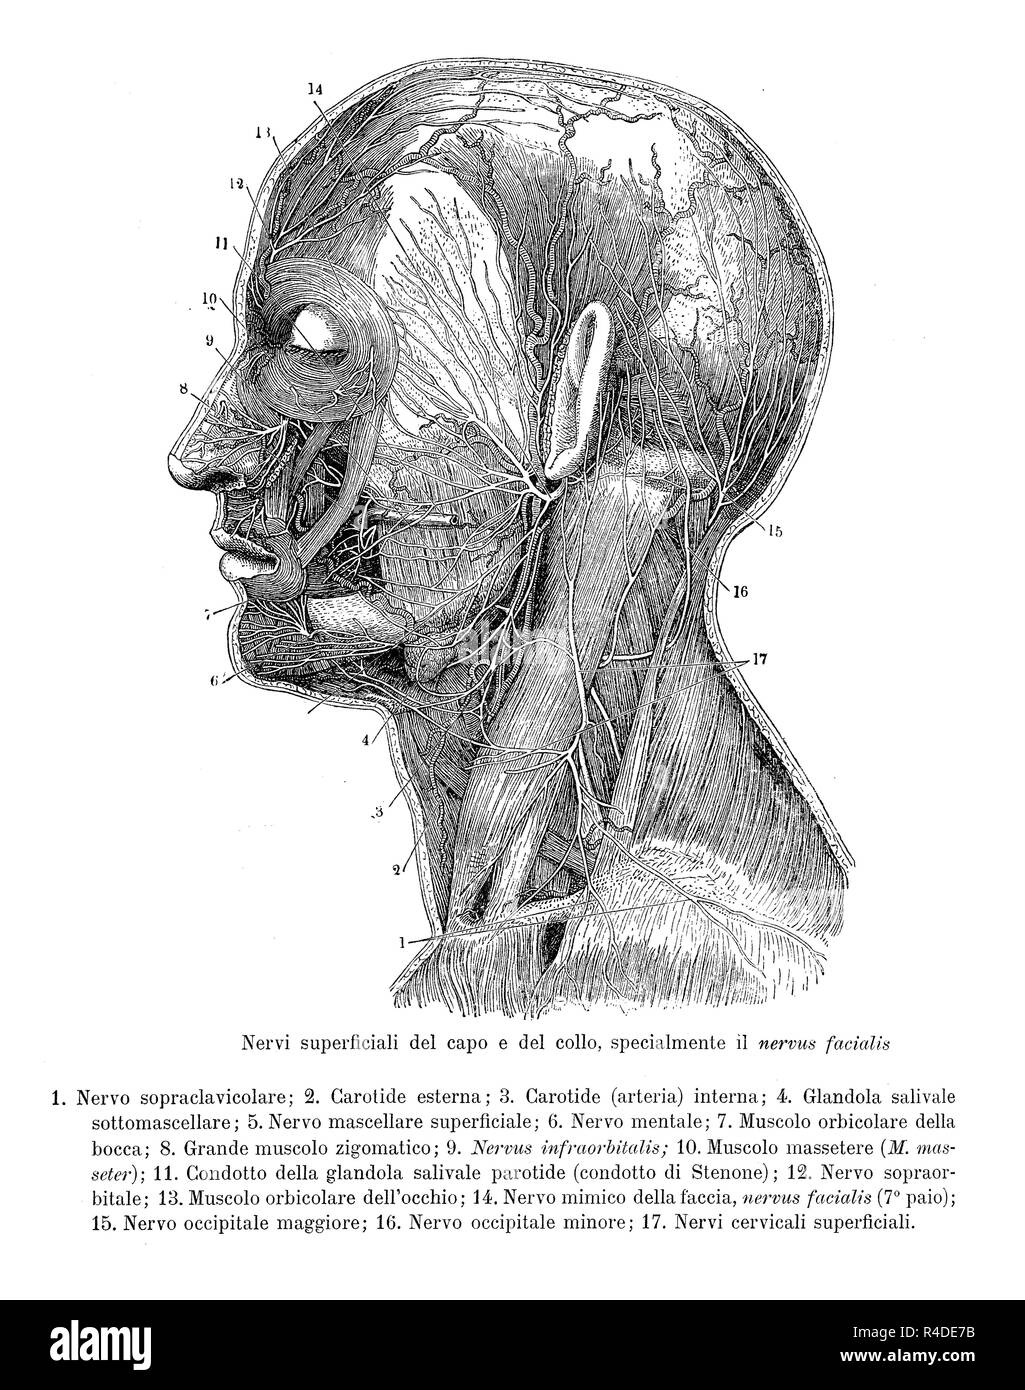 Vintage illustration de l'anatomie, la section transversale de la tête et du cou avec des preuves de nerfs superficiels, des descriptions anatomiques en italien Banque D'Images